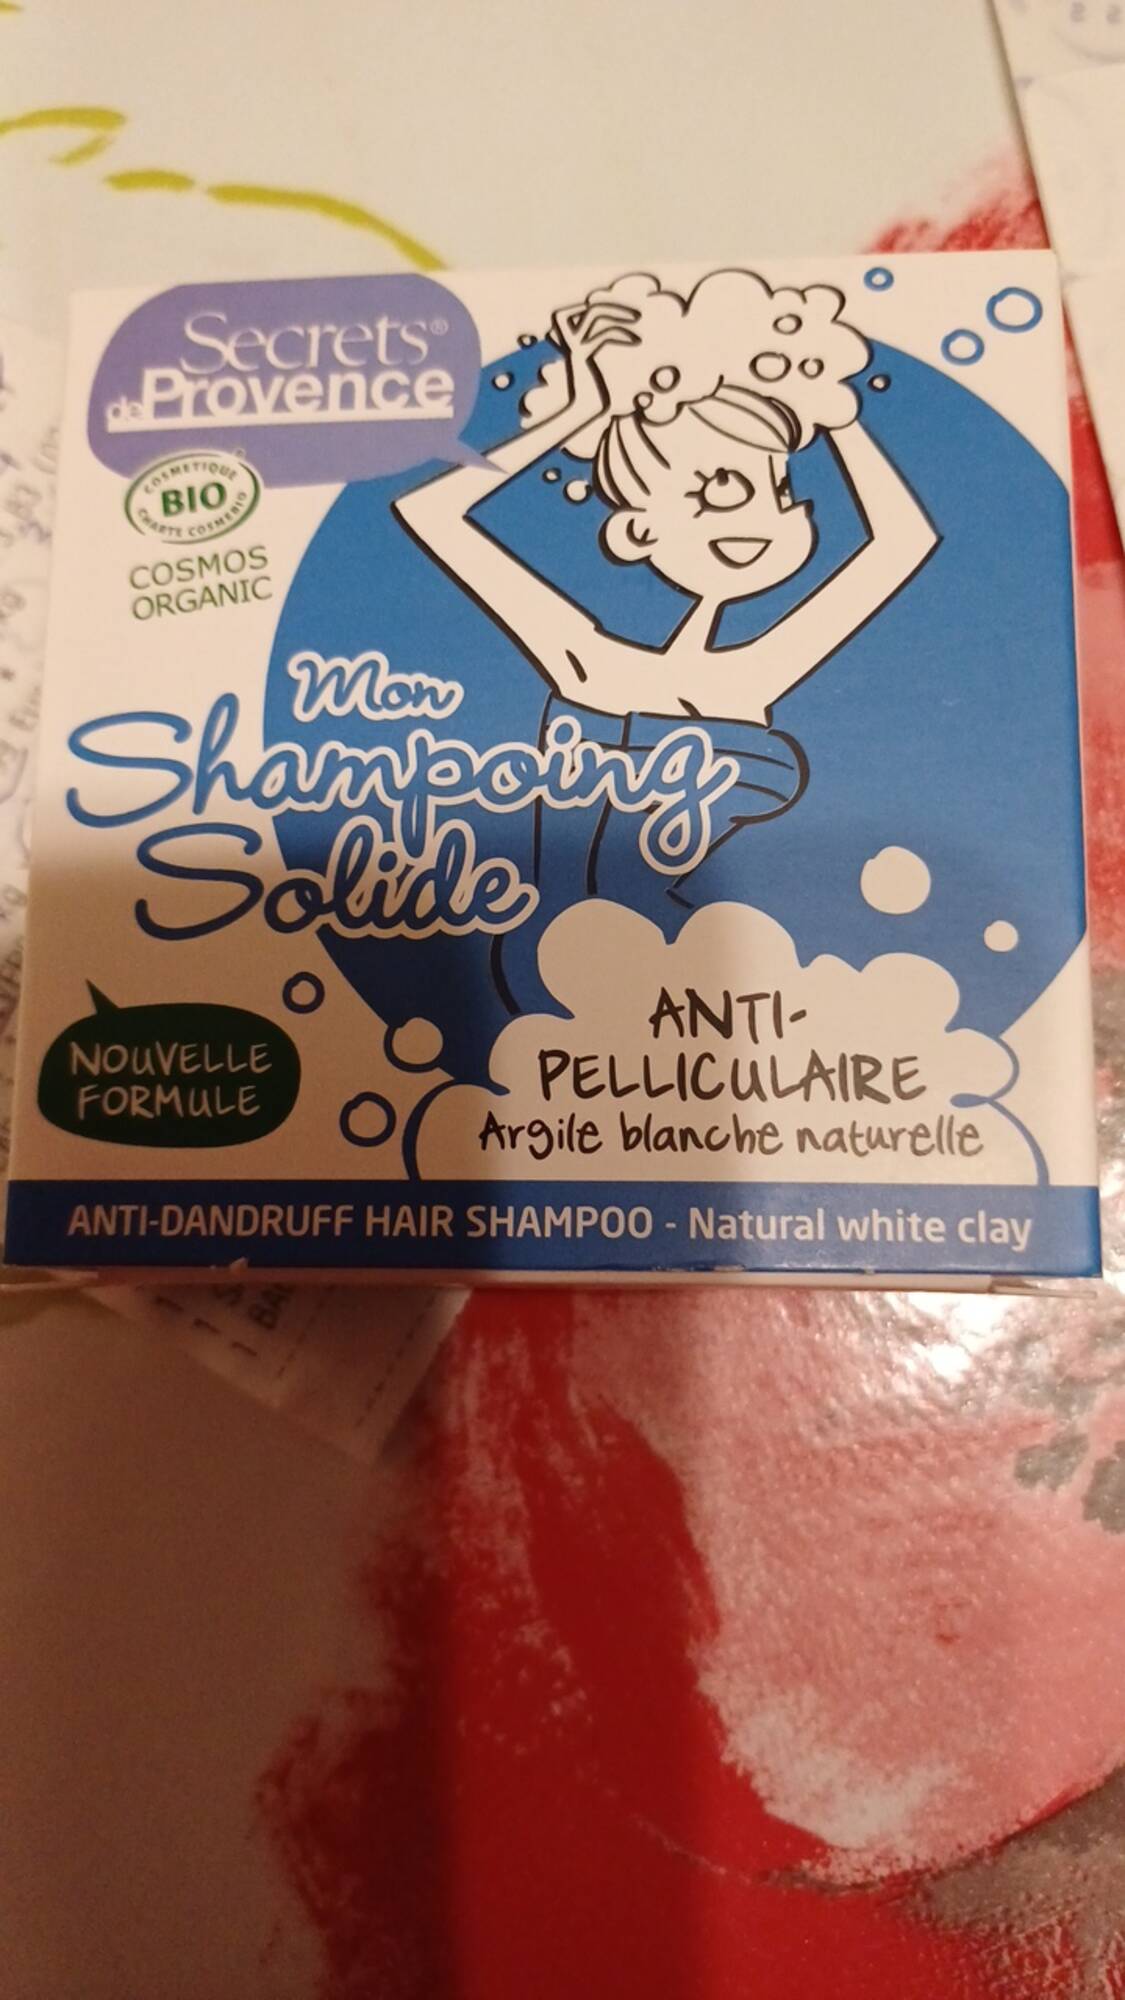 SECRET DE PROVENCE - Mon shampooing solide anti-pelliculaire